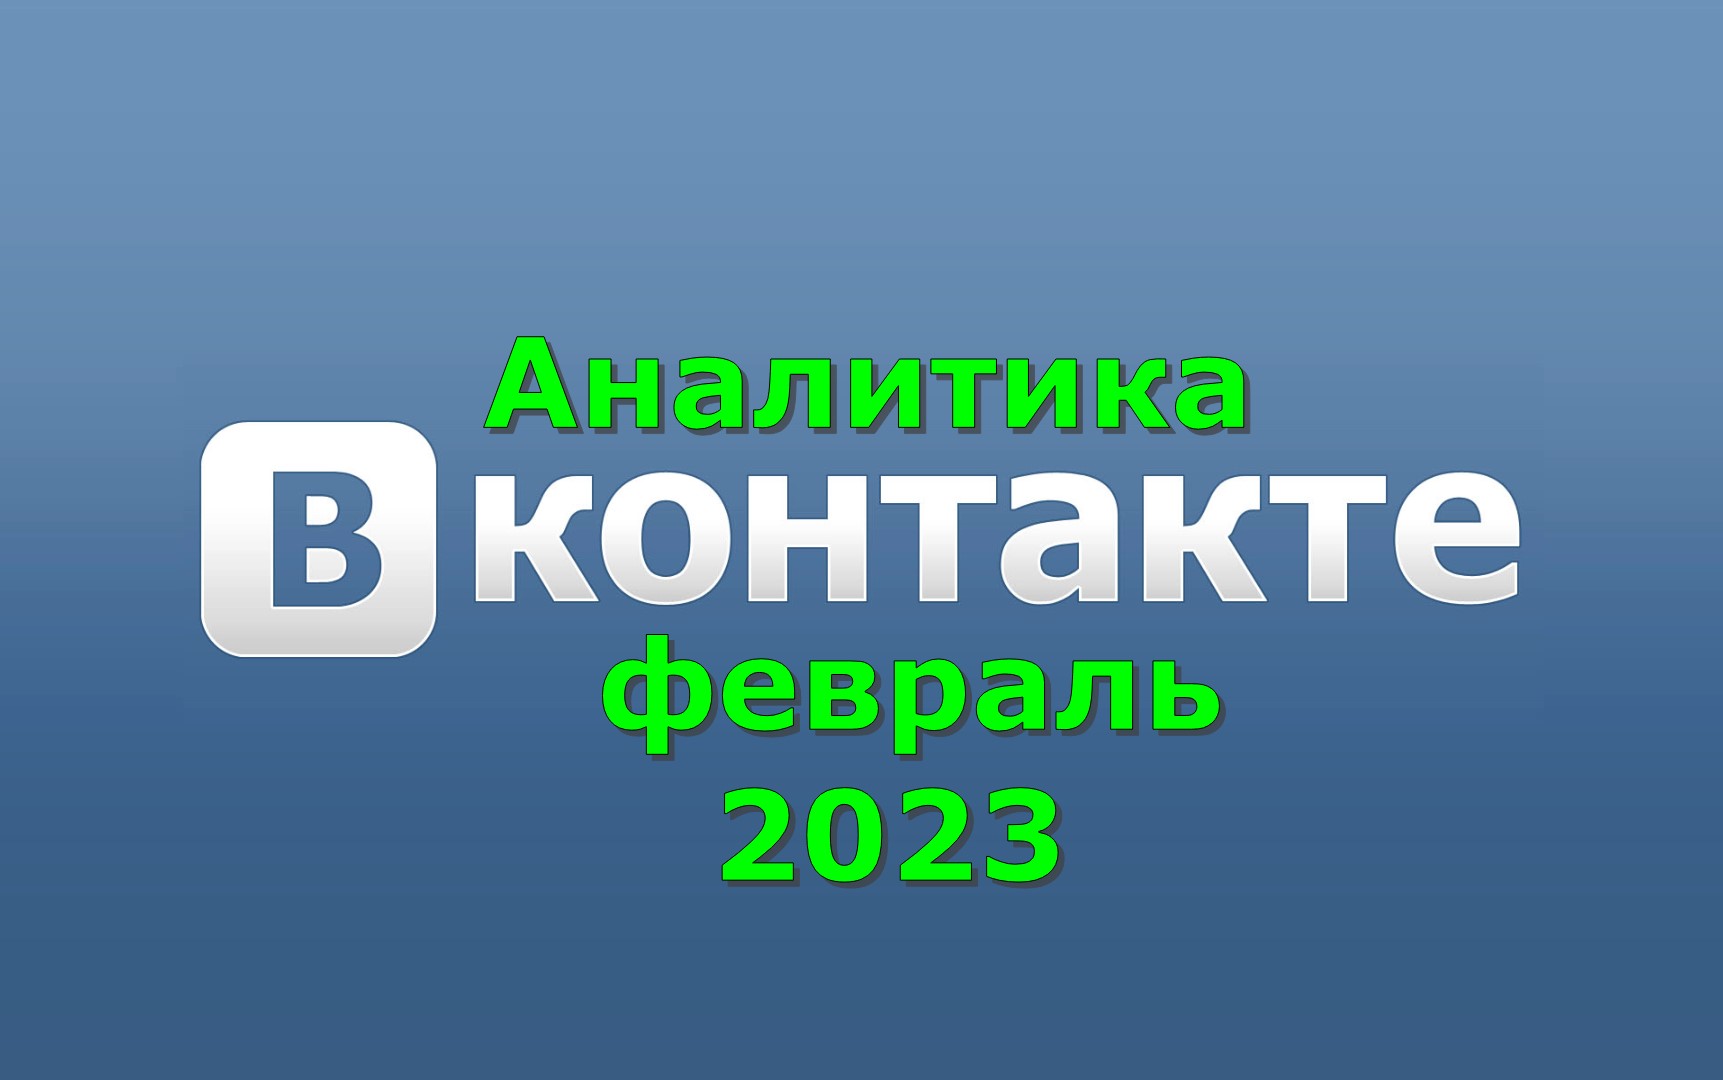 Аналитика ВКонтакте февраль 2023